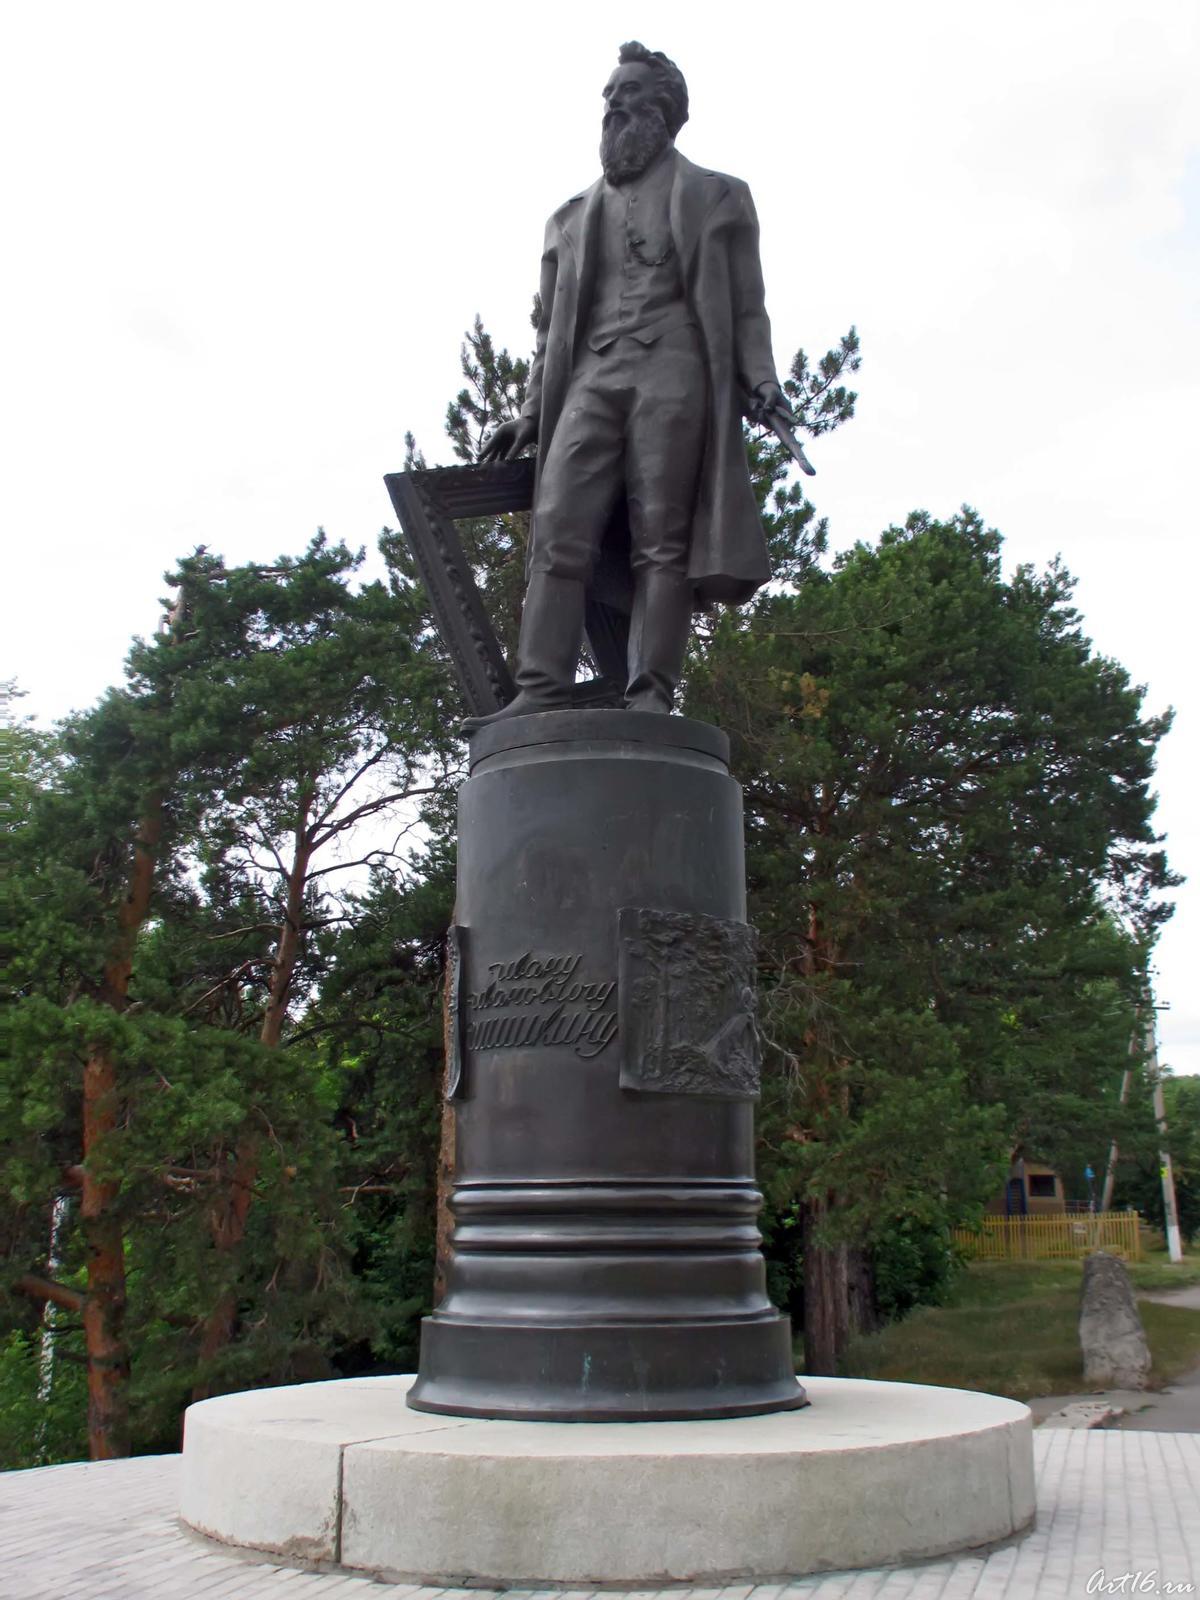 Фото №31243. Памятник Ивану Ивановичу Шишкину